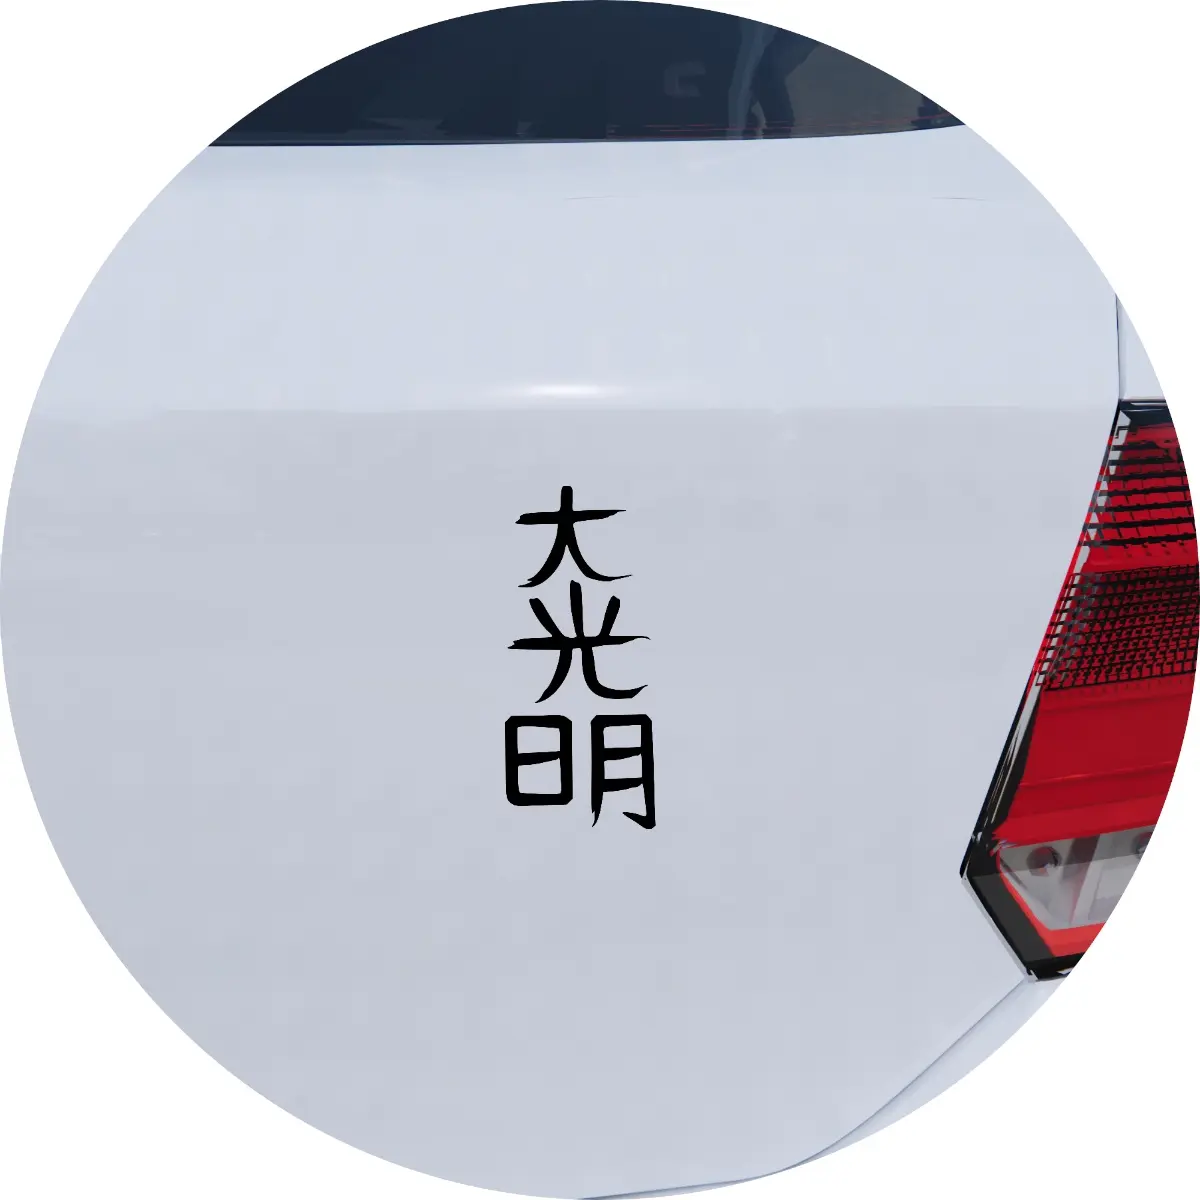 Dai koo myo symbol in a car